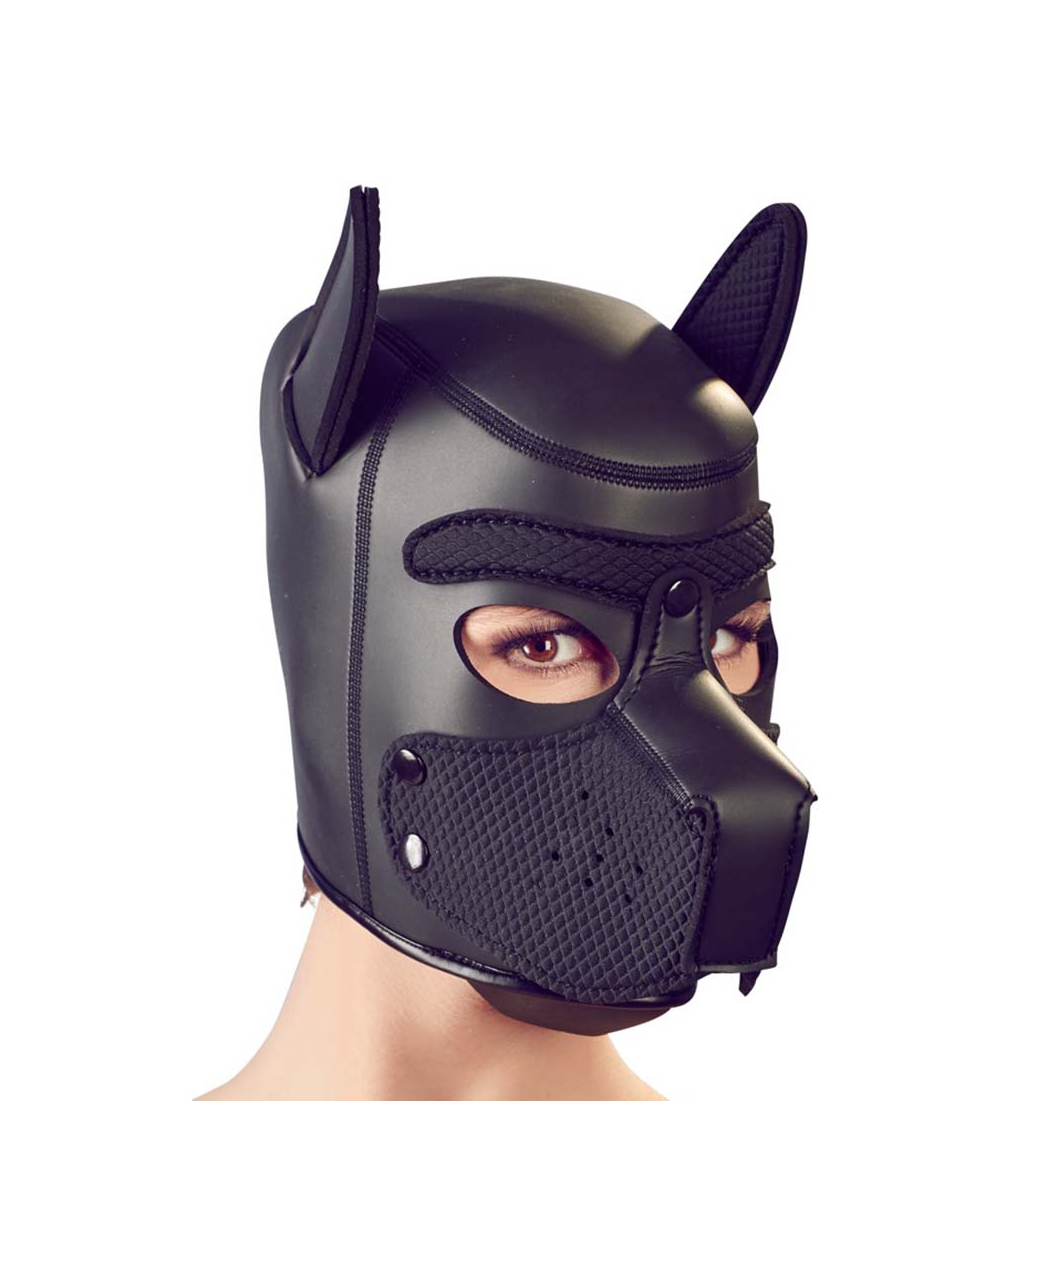 Bad Kitty black dog mask